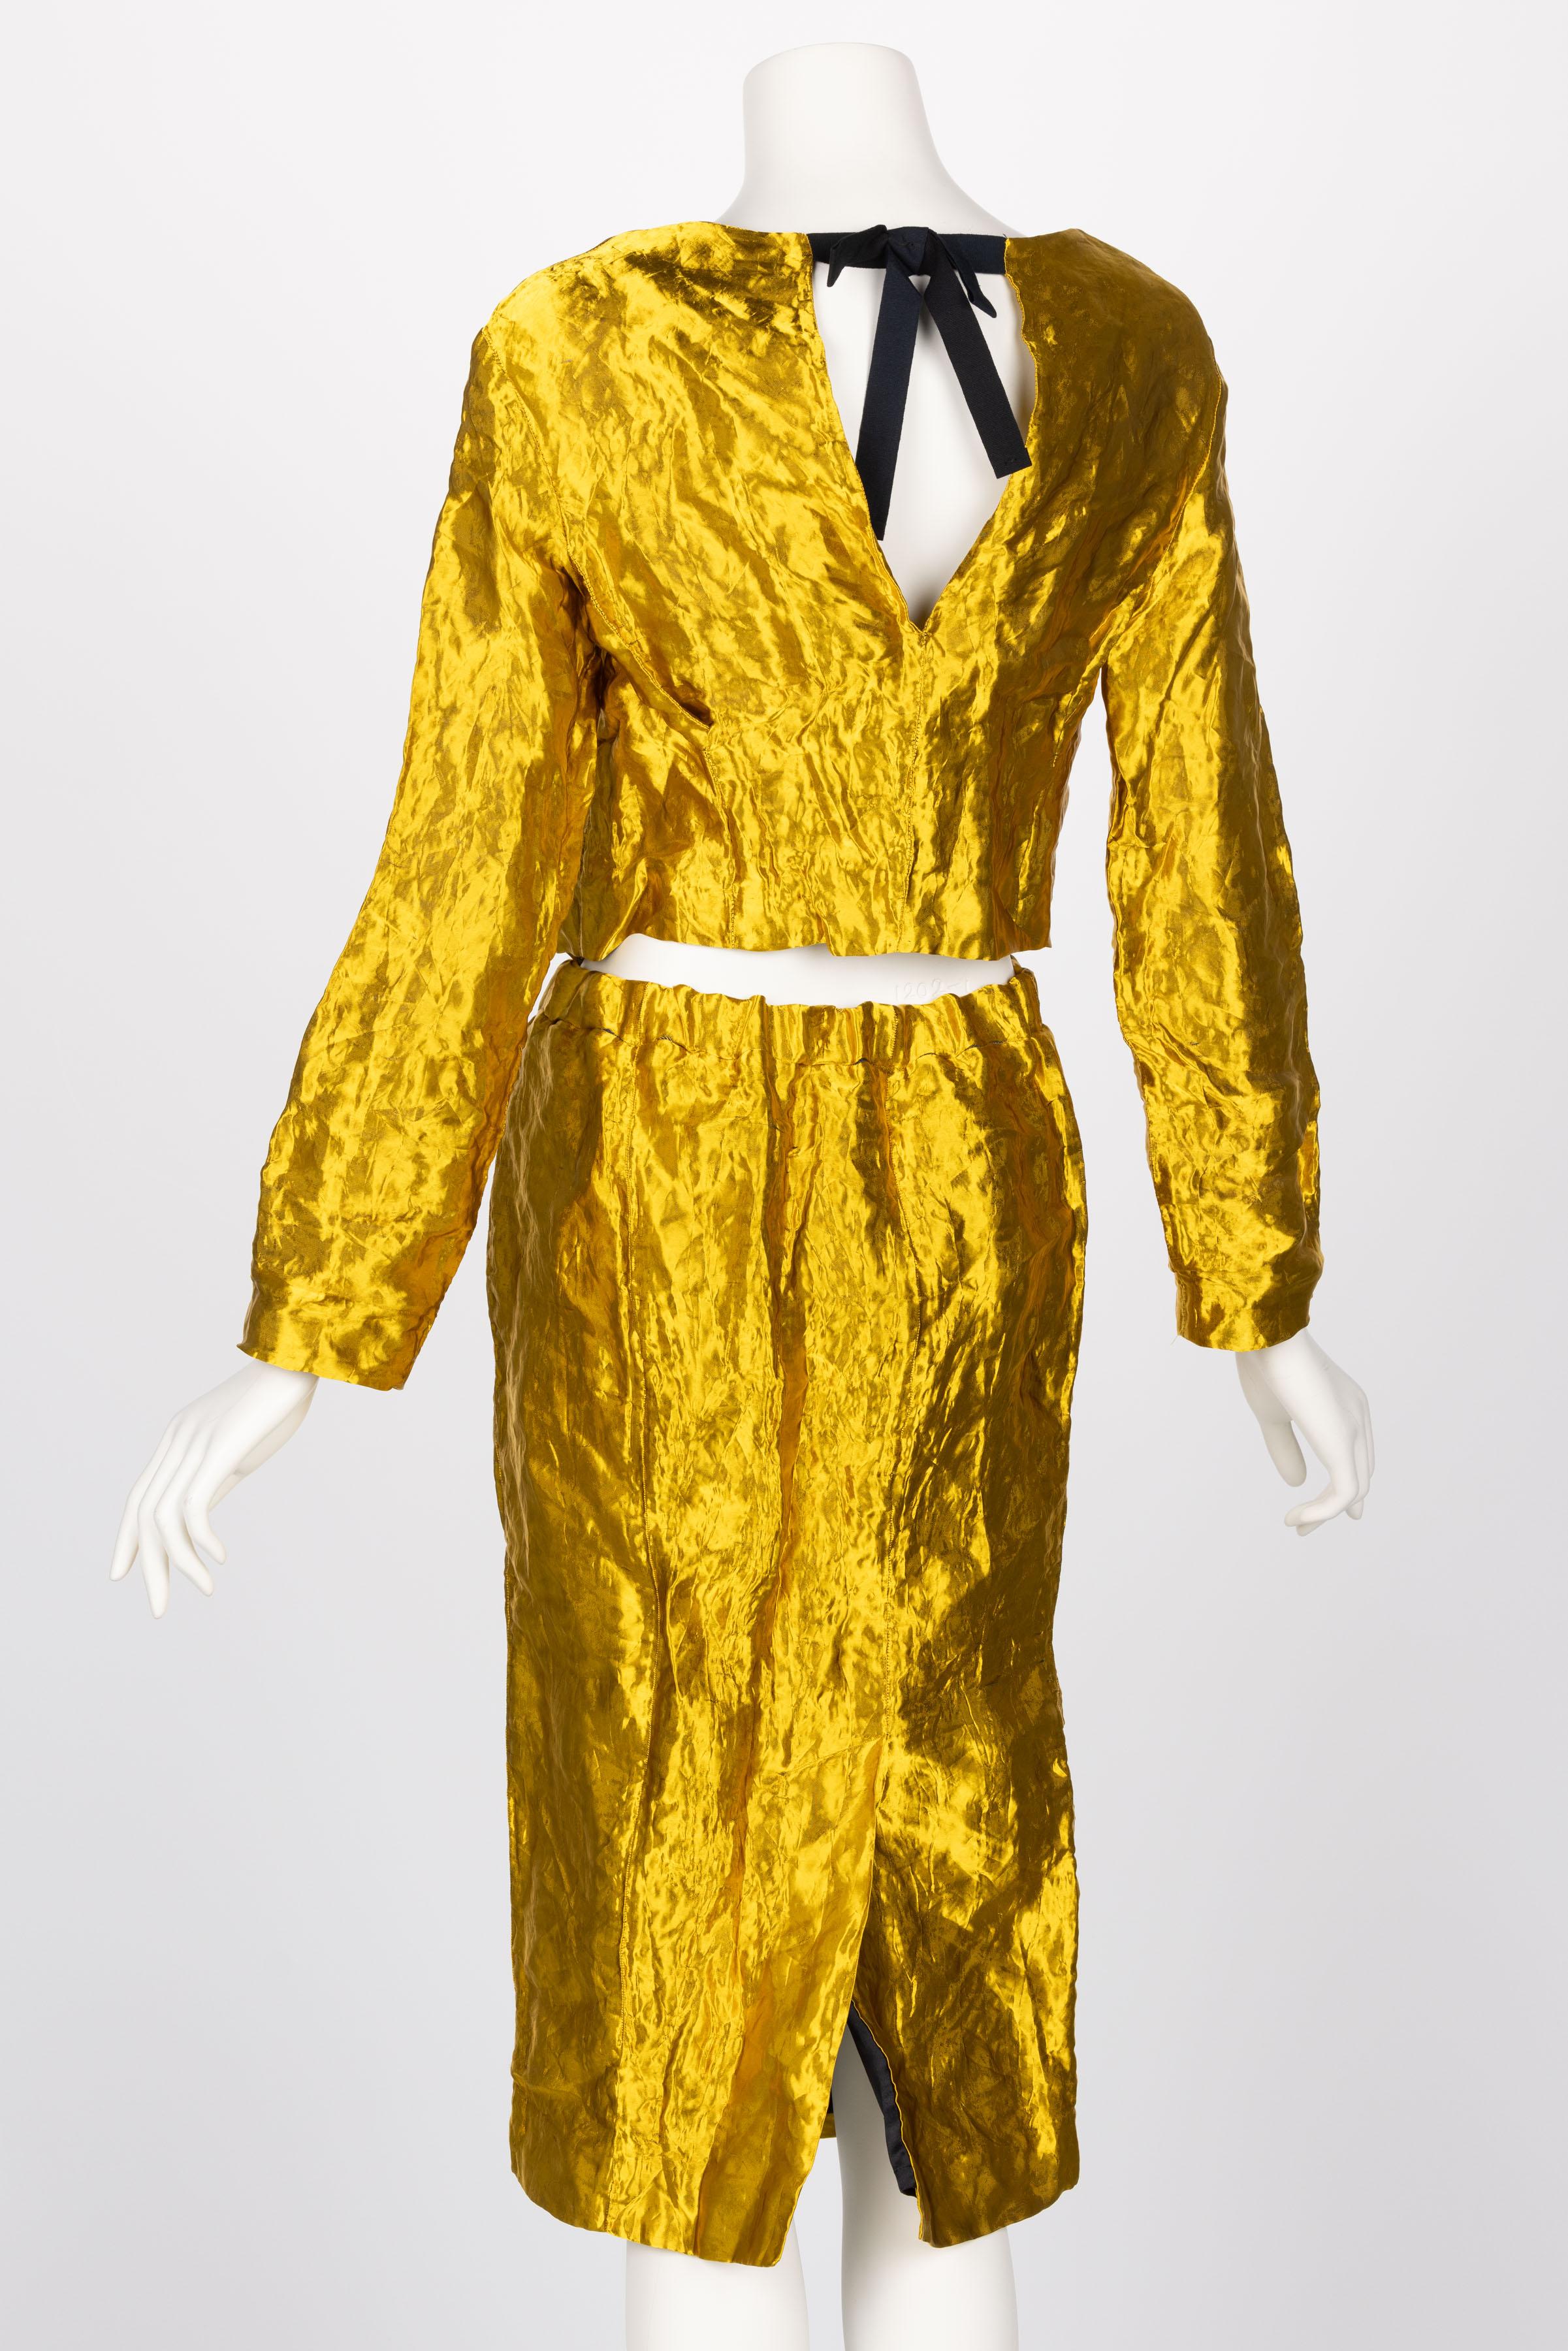 Prada - Ensemble veste et jupe en métal doré, printemps 2009 1